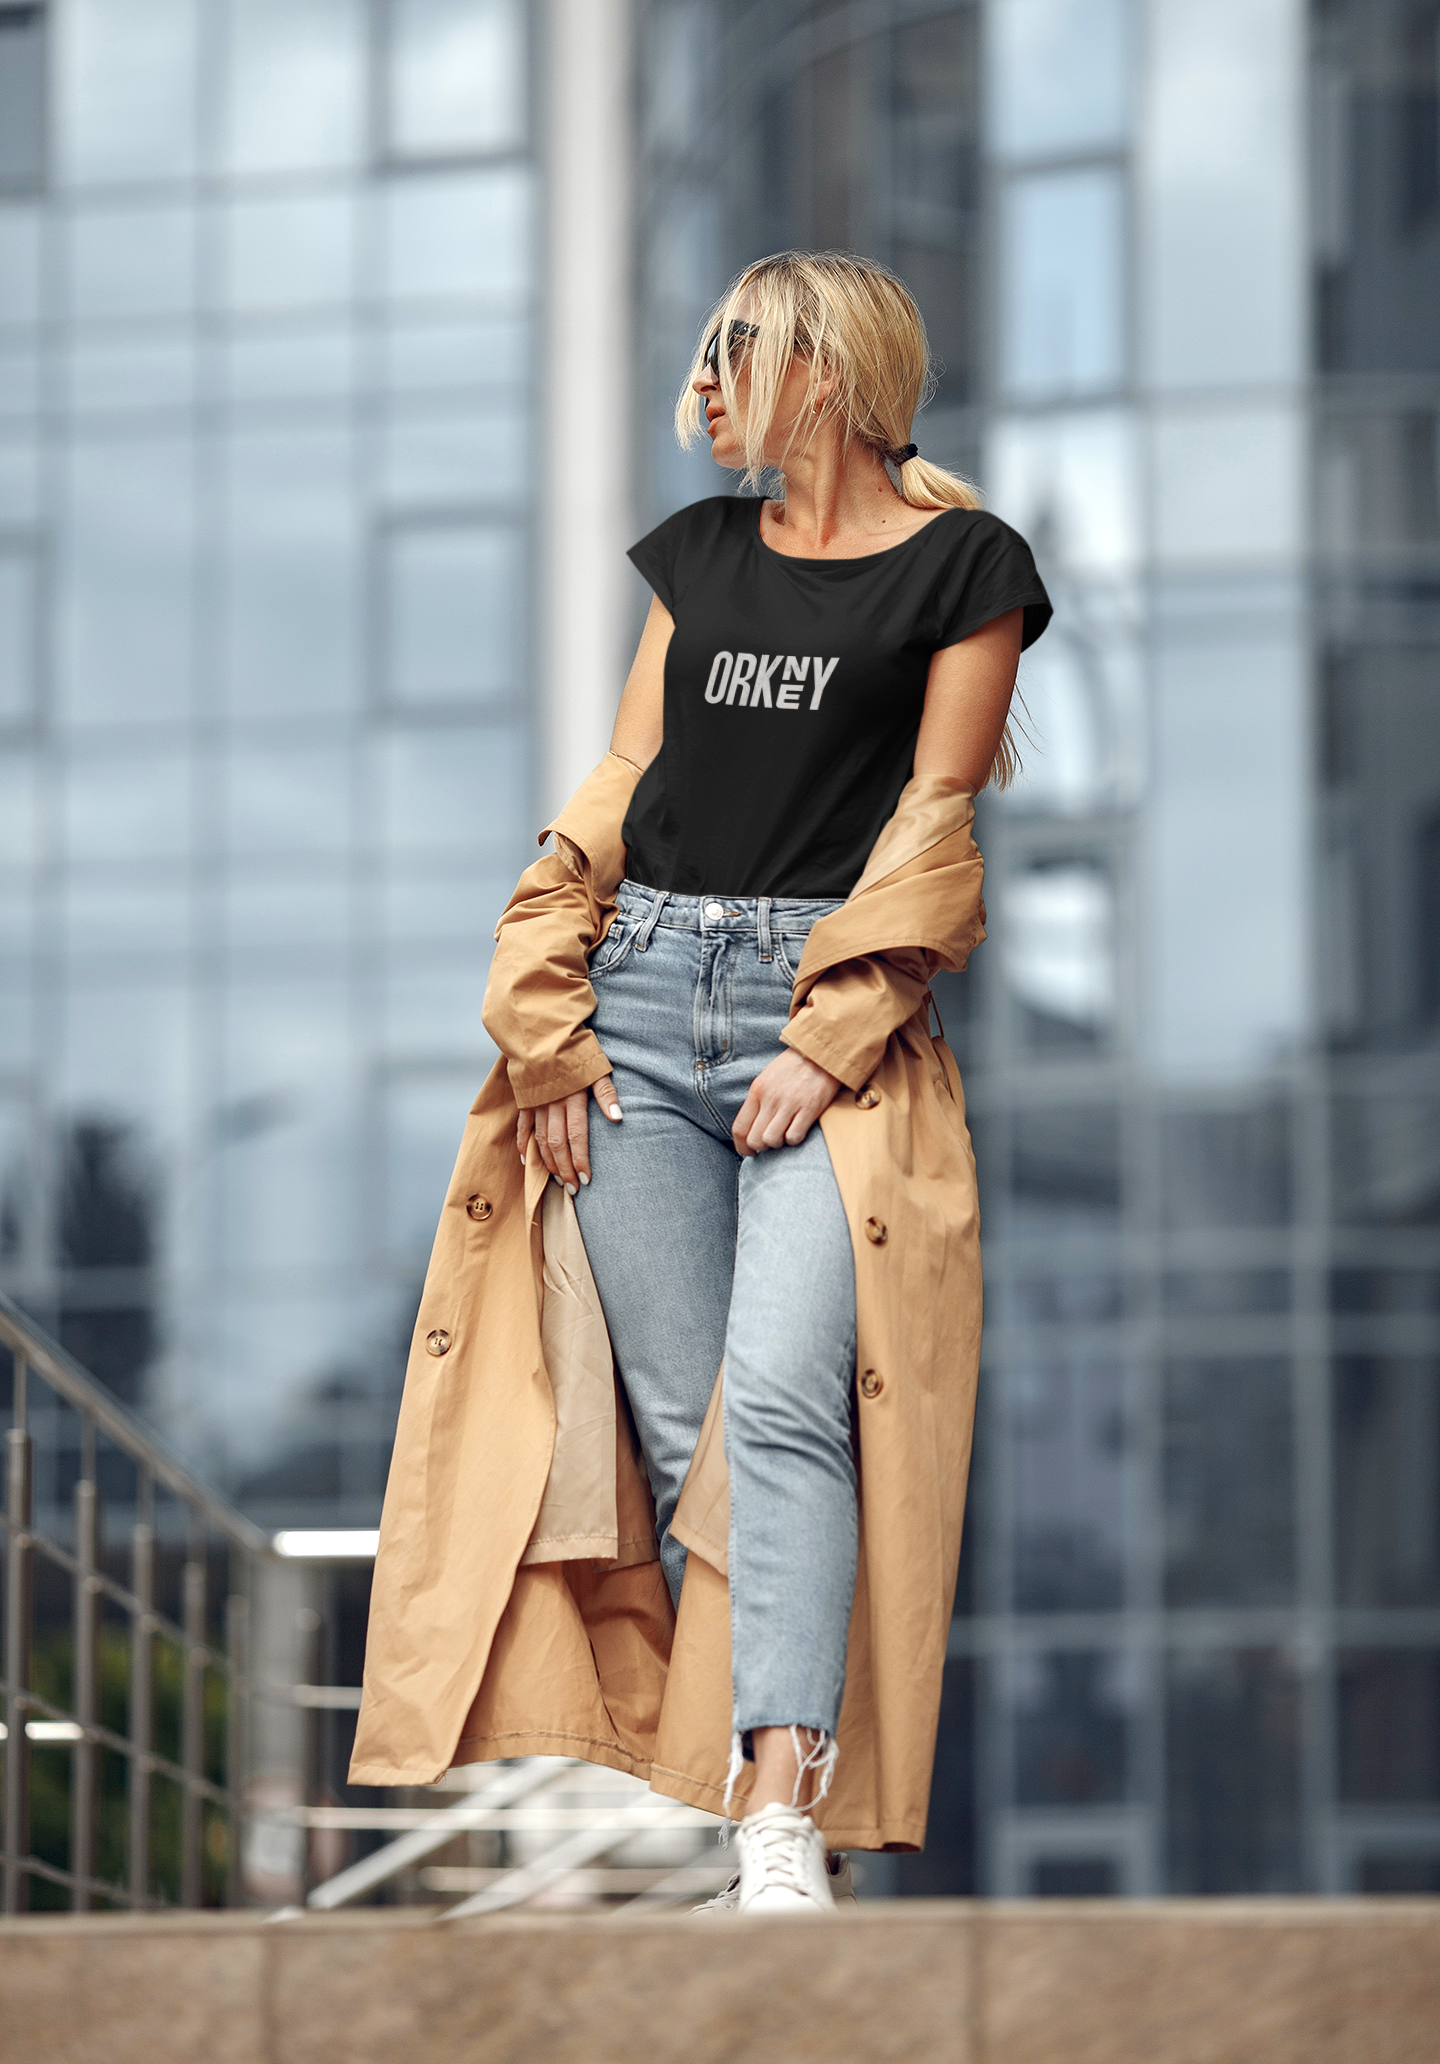 Nueva colección moda ORKNEY camisetas urbanas modernas y en tendencia